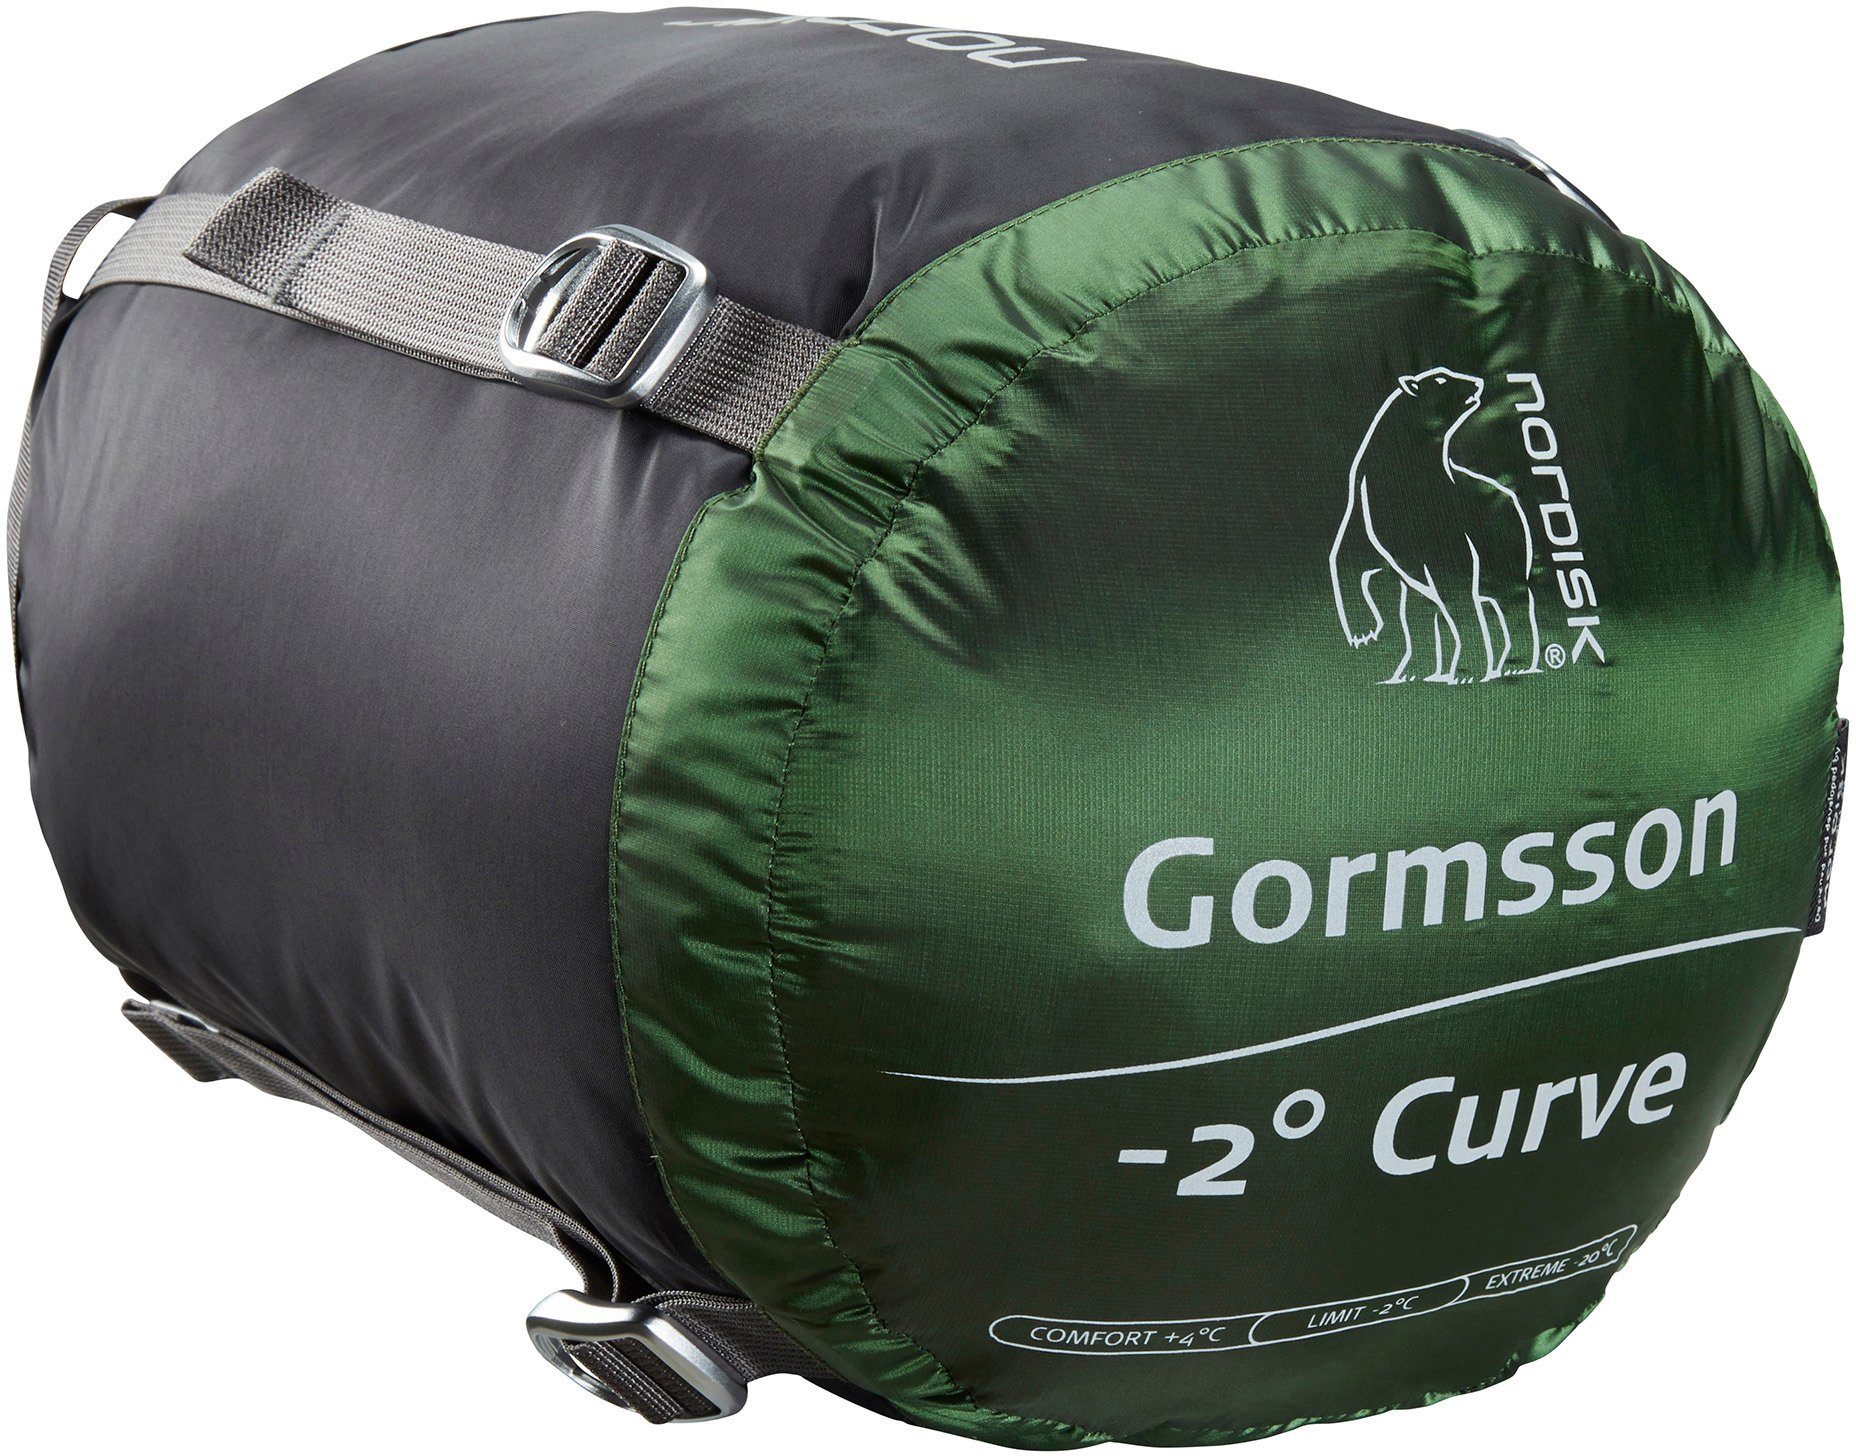 tlg) Curve Gormsson Nordisk Mumienschlafsack (2 -2Â°